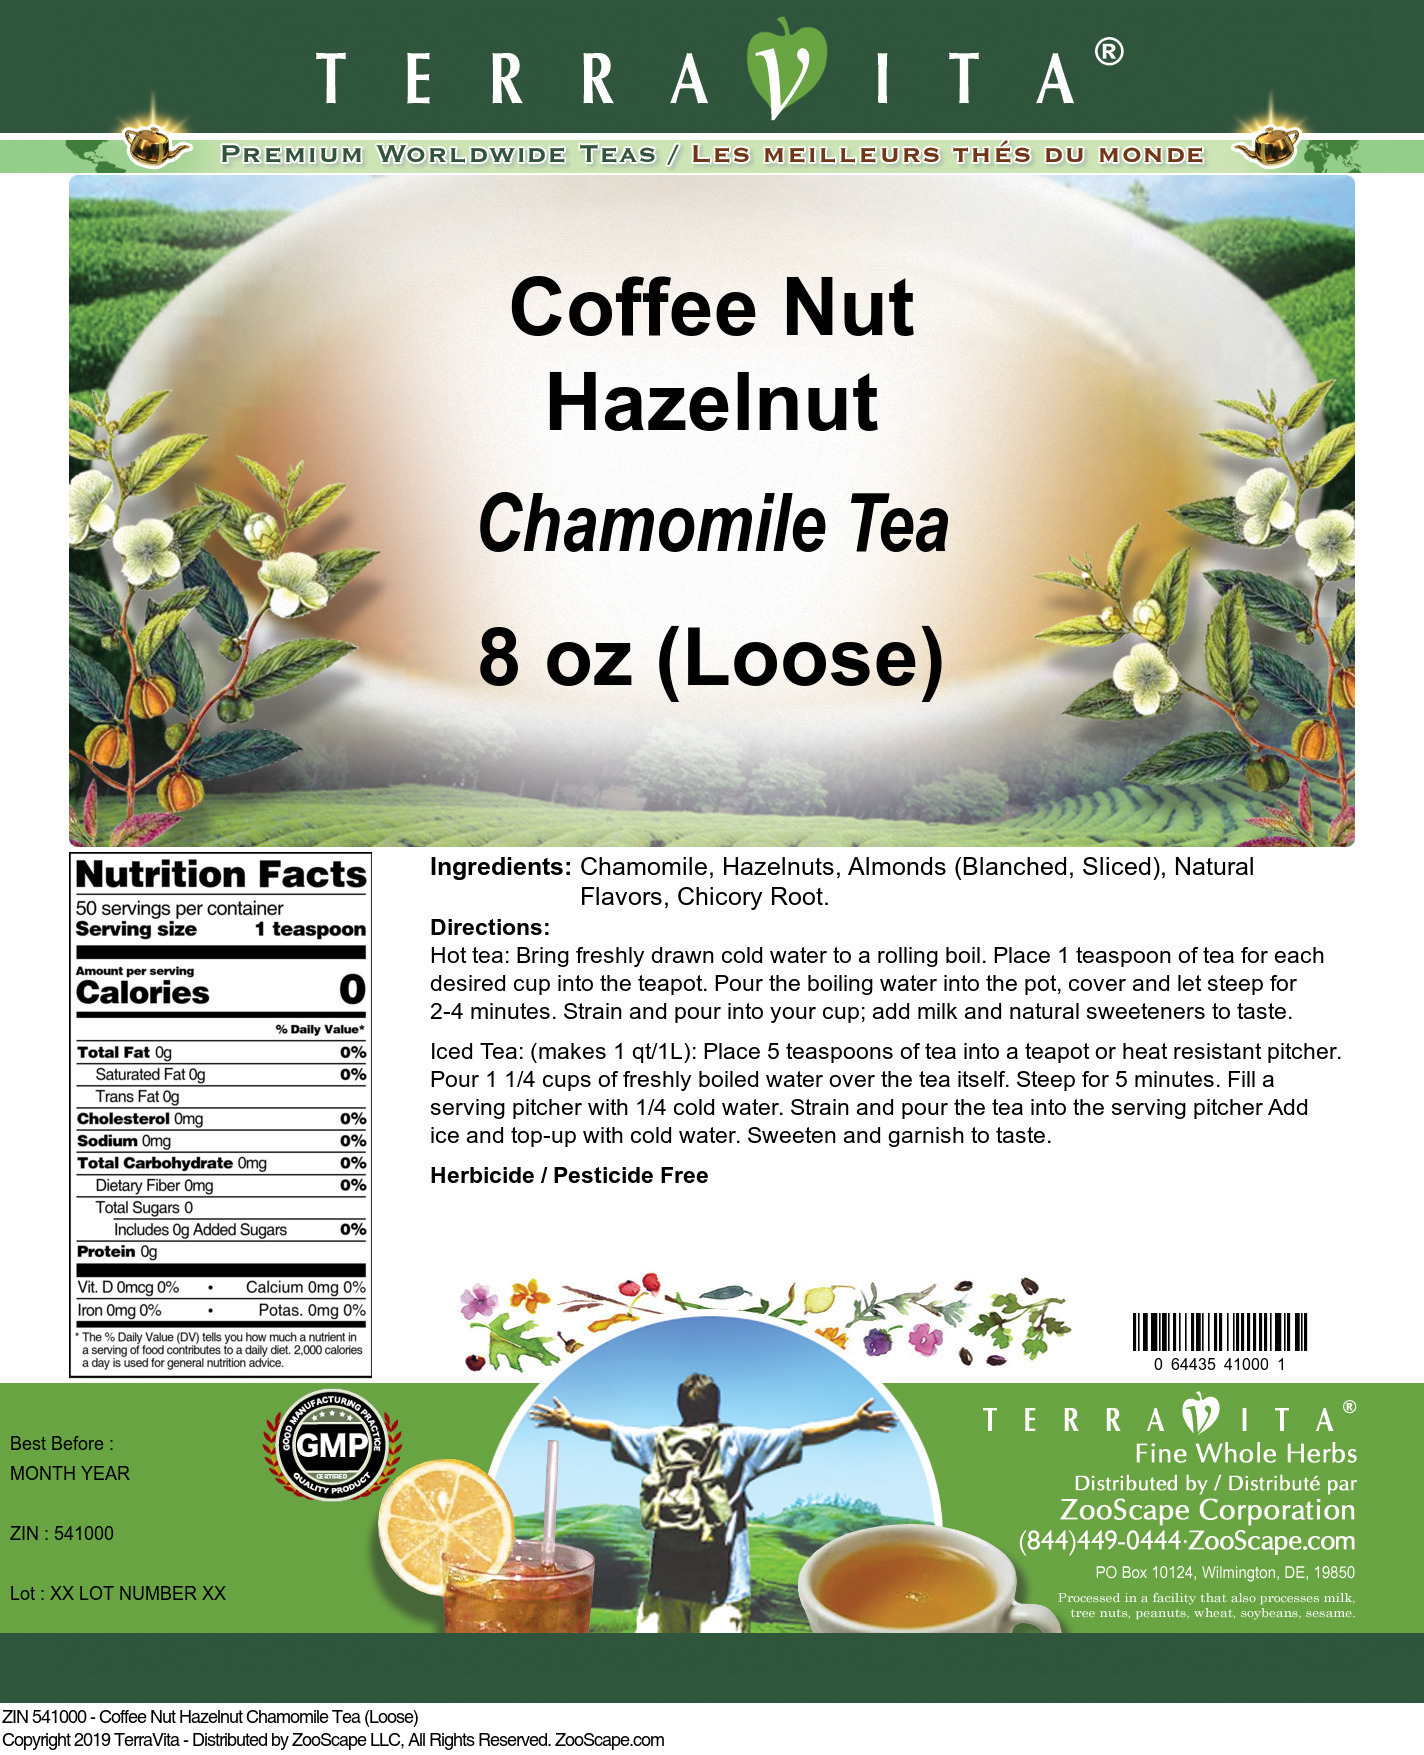 Coffee Nut Hazelnut Chamomile Tea (Loose) - Label